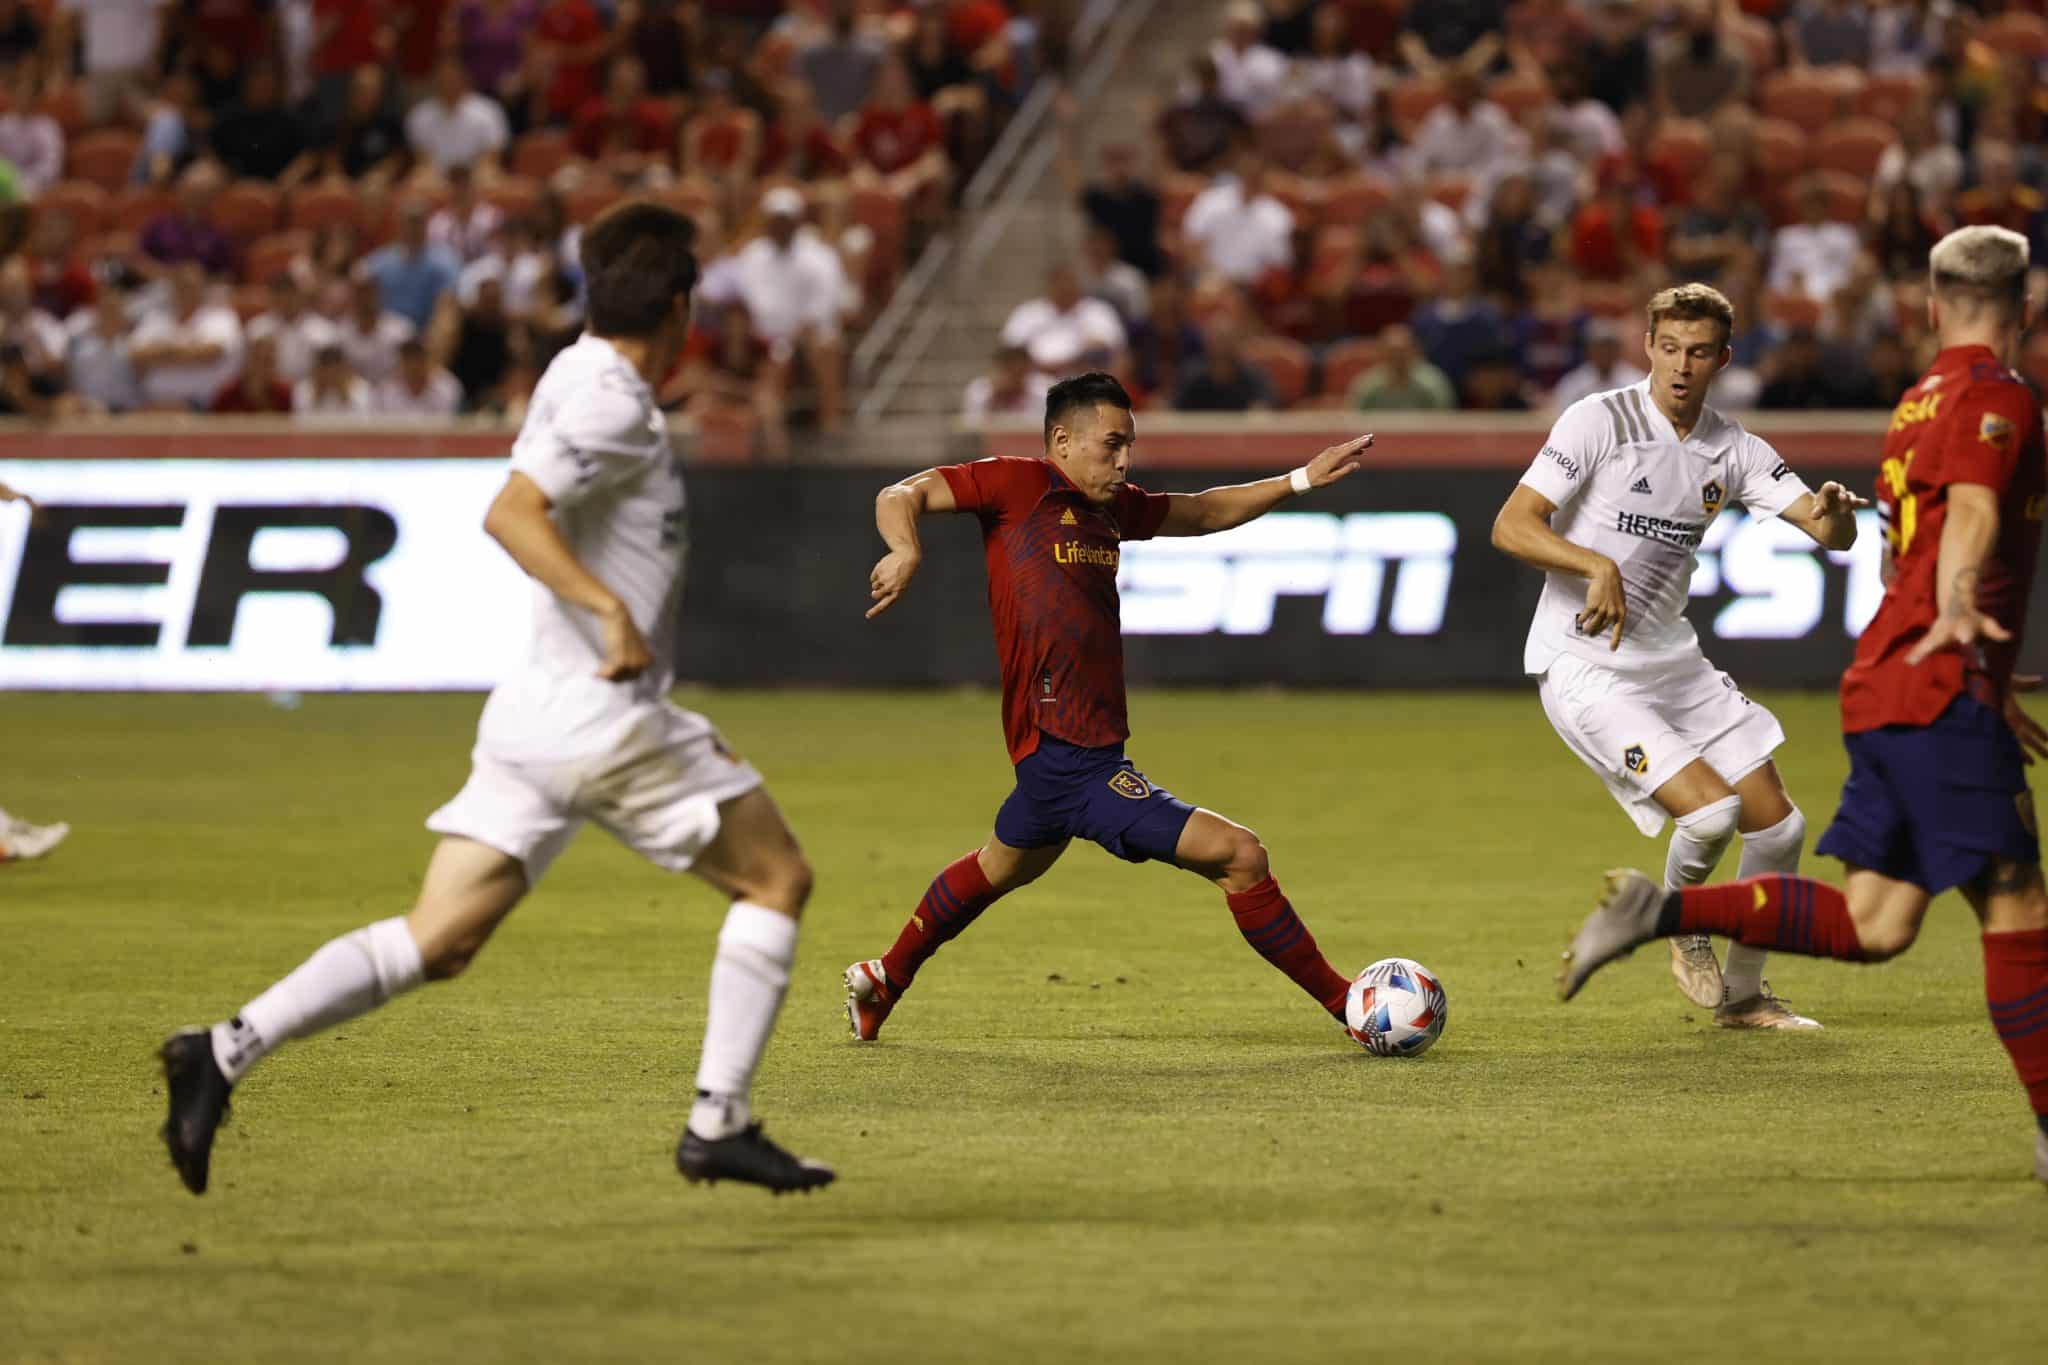 Pré-jogo: LA Galaxy visita Real Salt Lake a fim de afastar má fase